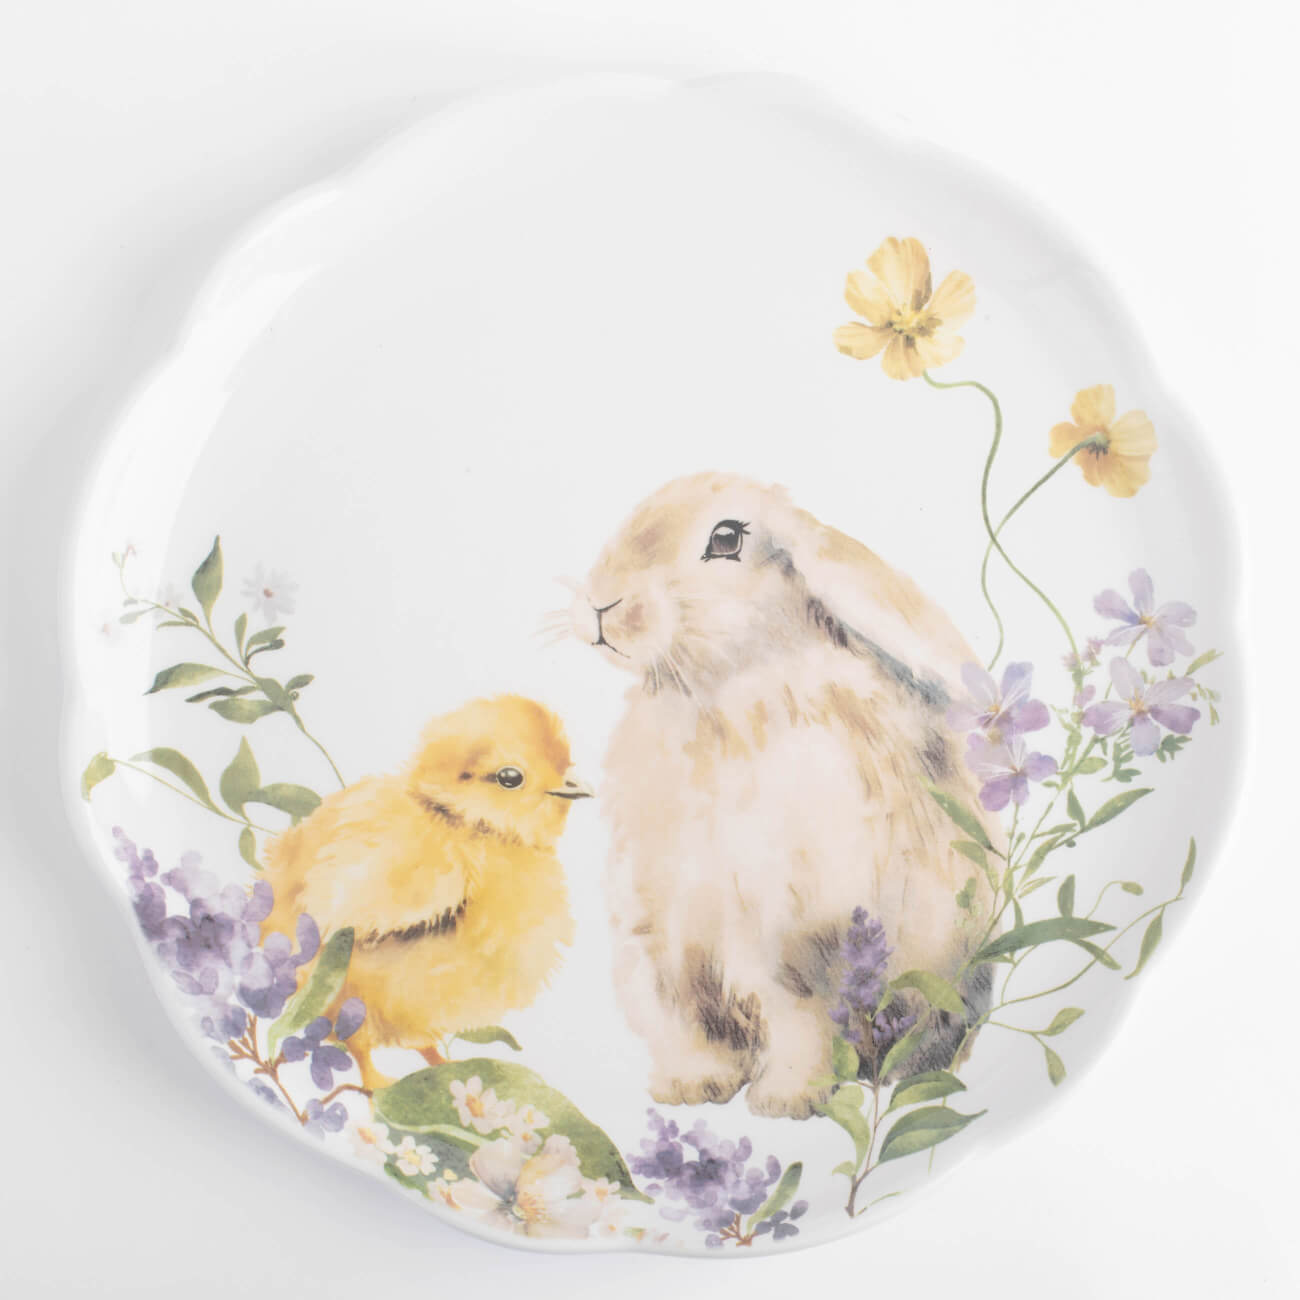 Тарелка закусочная, 24 см, керамика, белая, Кролик и цыпленок в цветах, Easter тарелка скандинавская veles рассвет над имладрис 24 см